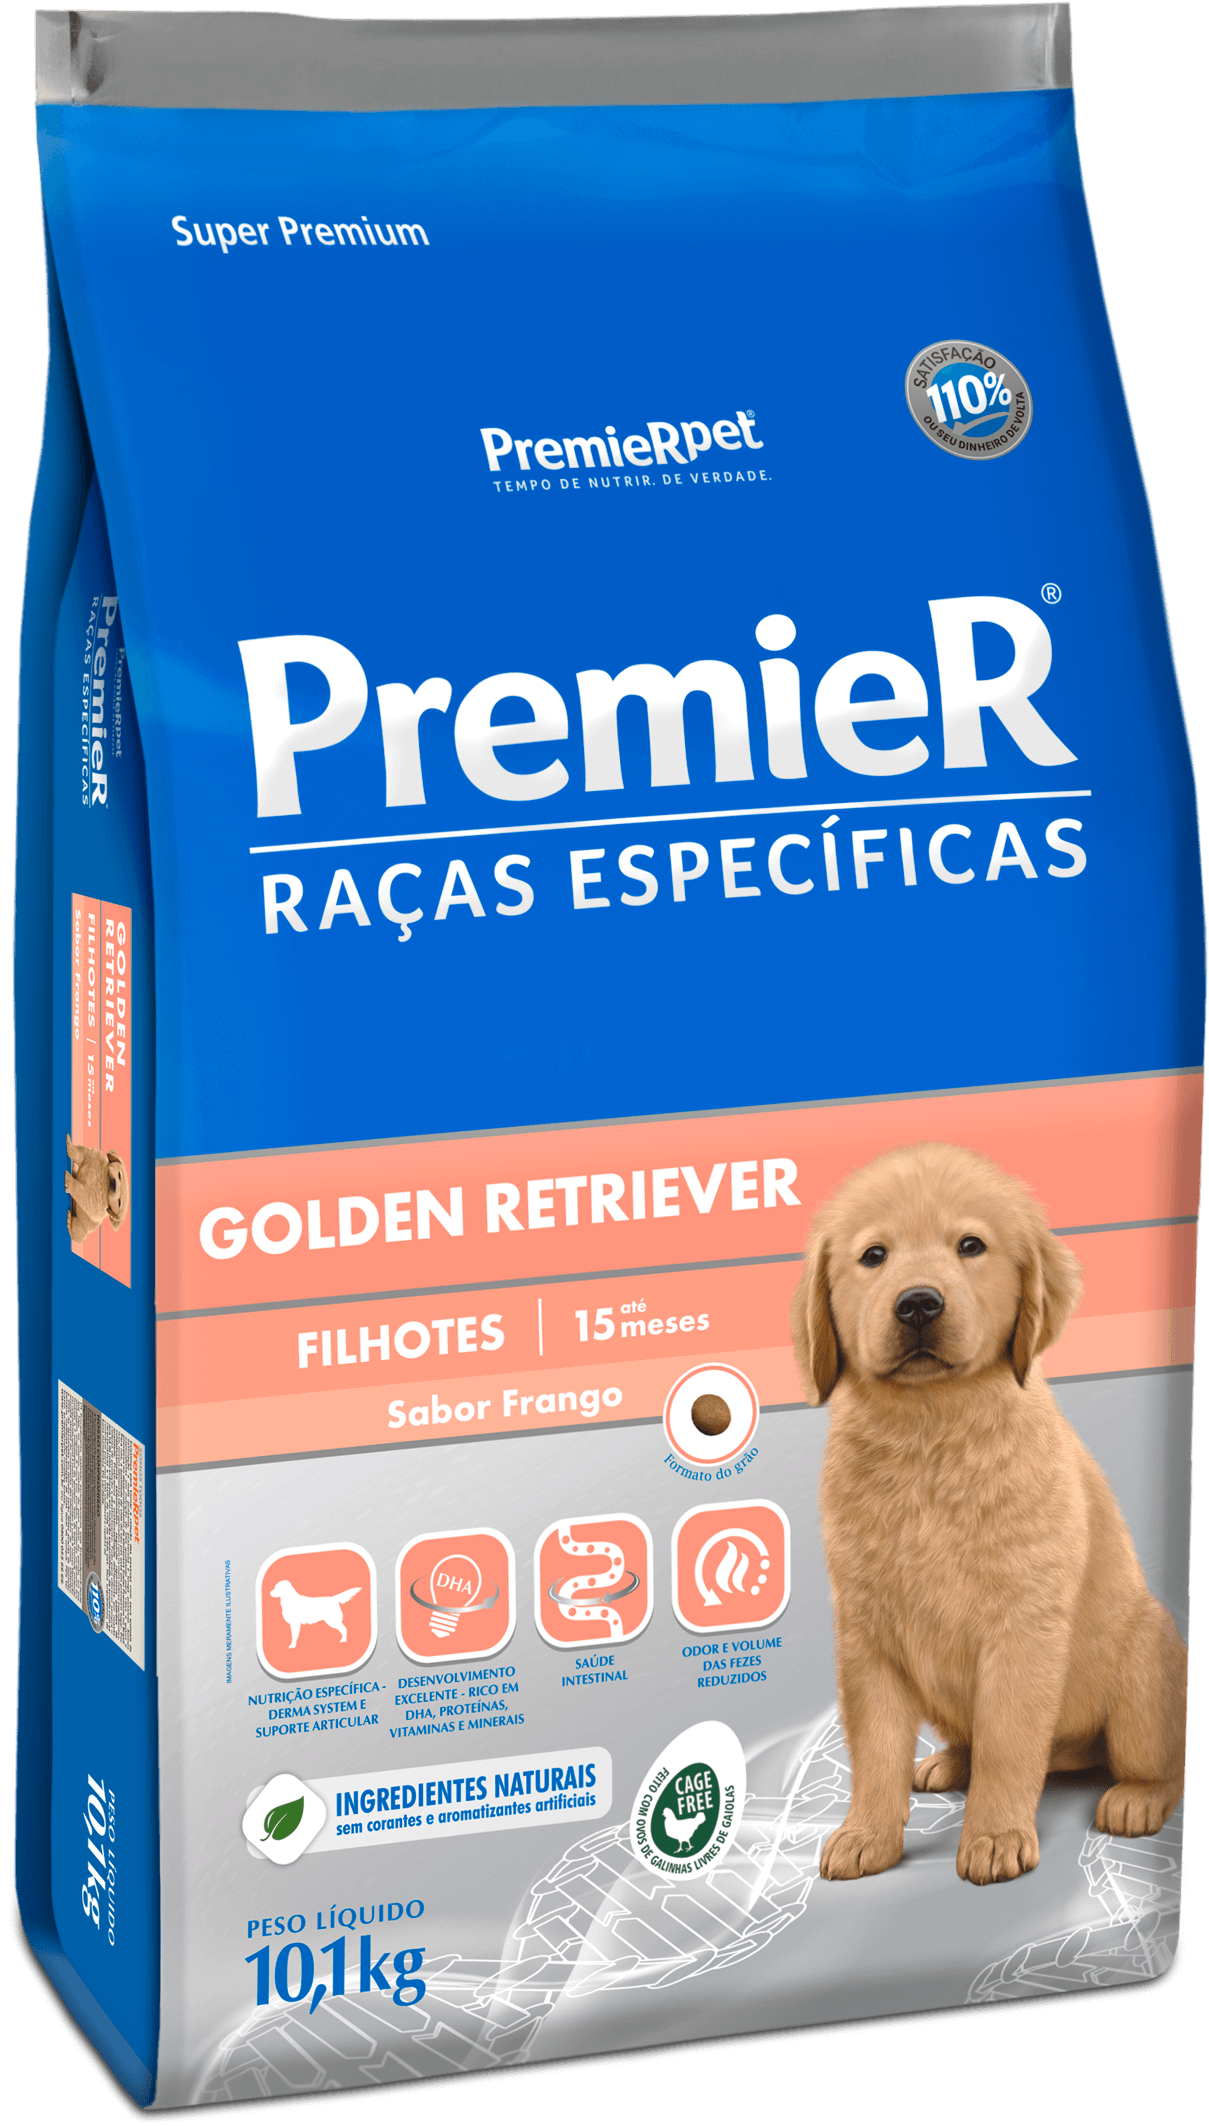 PremieR® Raças Específicas Golden Retriever Filhotes Porte Grande Sabor Frango